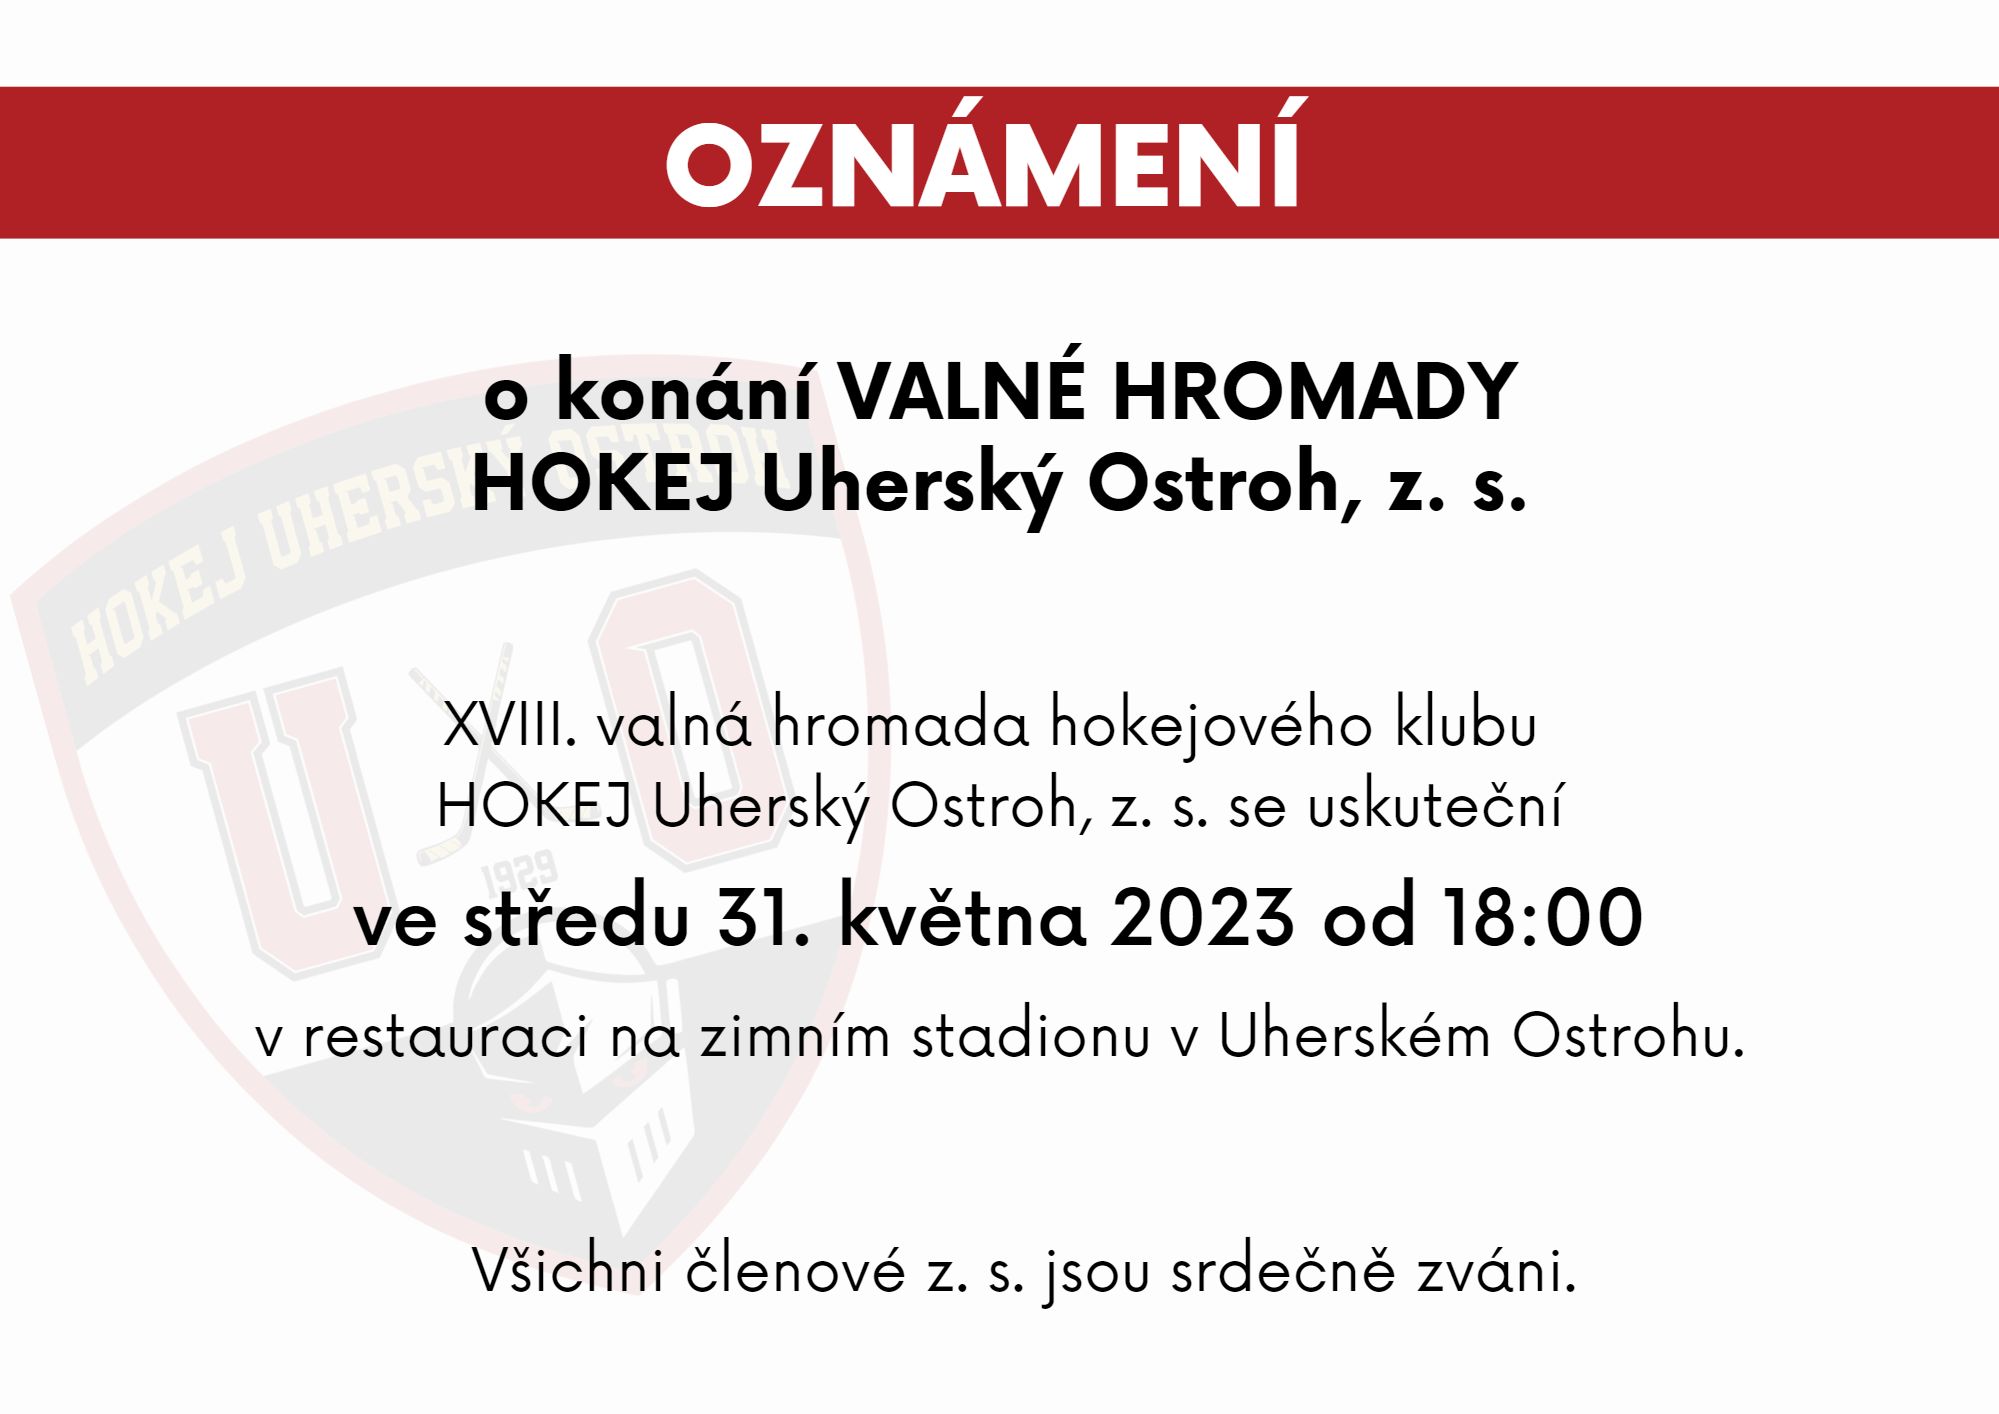 www.hokejostroh.cz